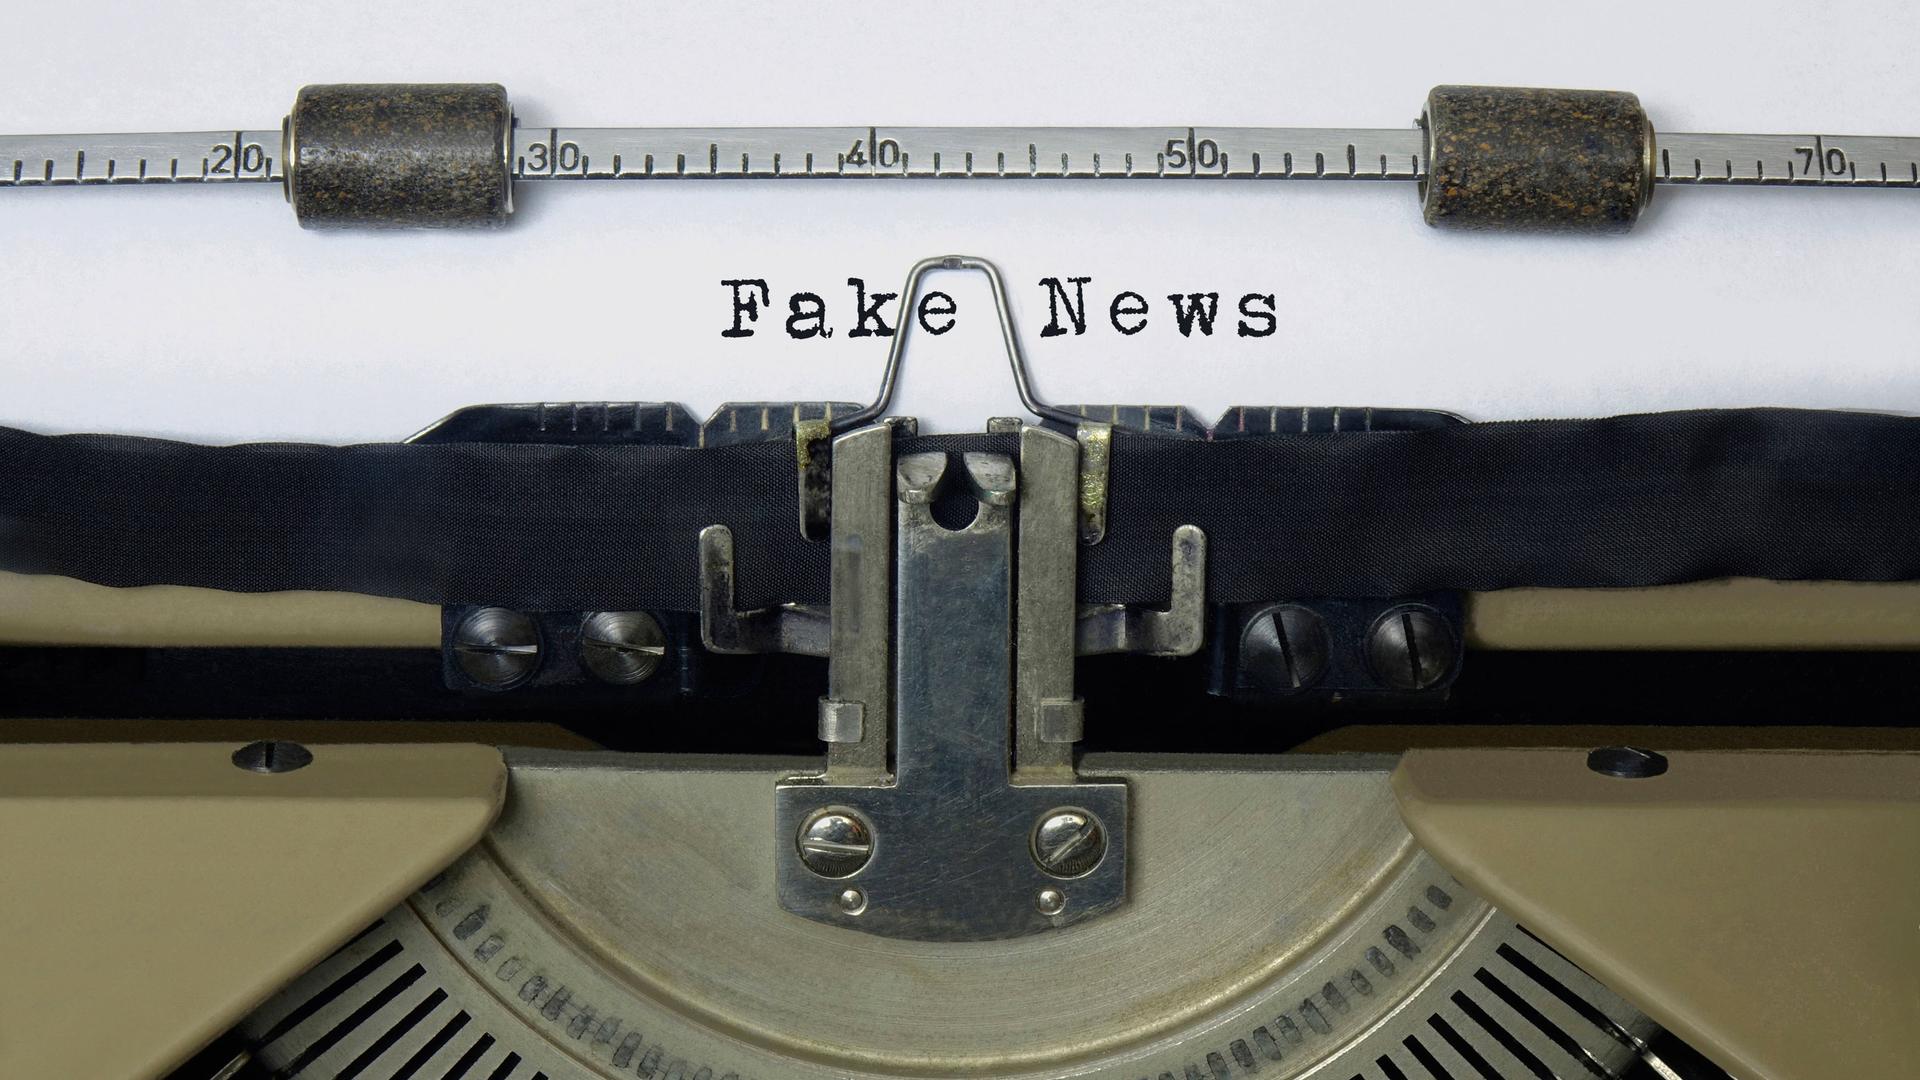 Auf dem Papier einer alten Schreibmaschine steht der Schriftzug Fake News.
